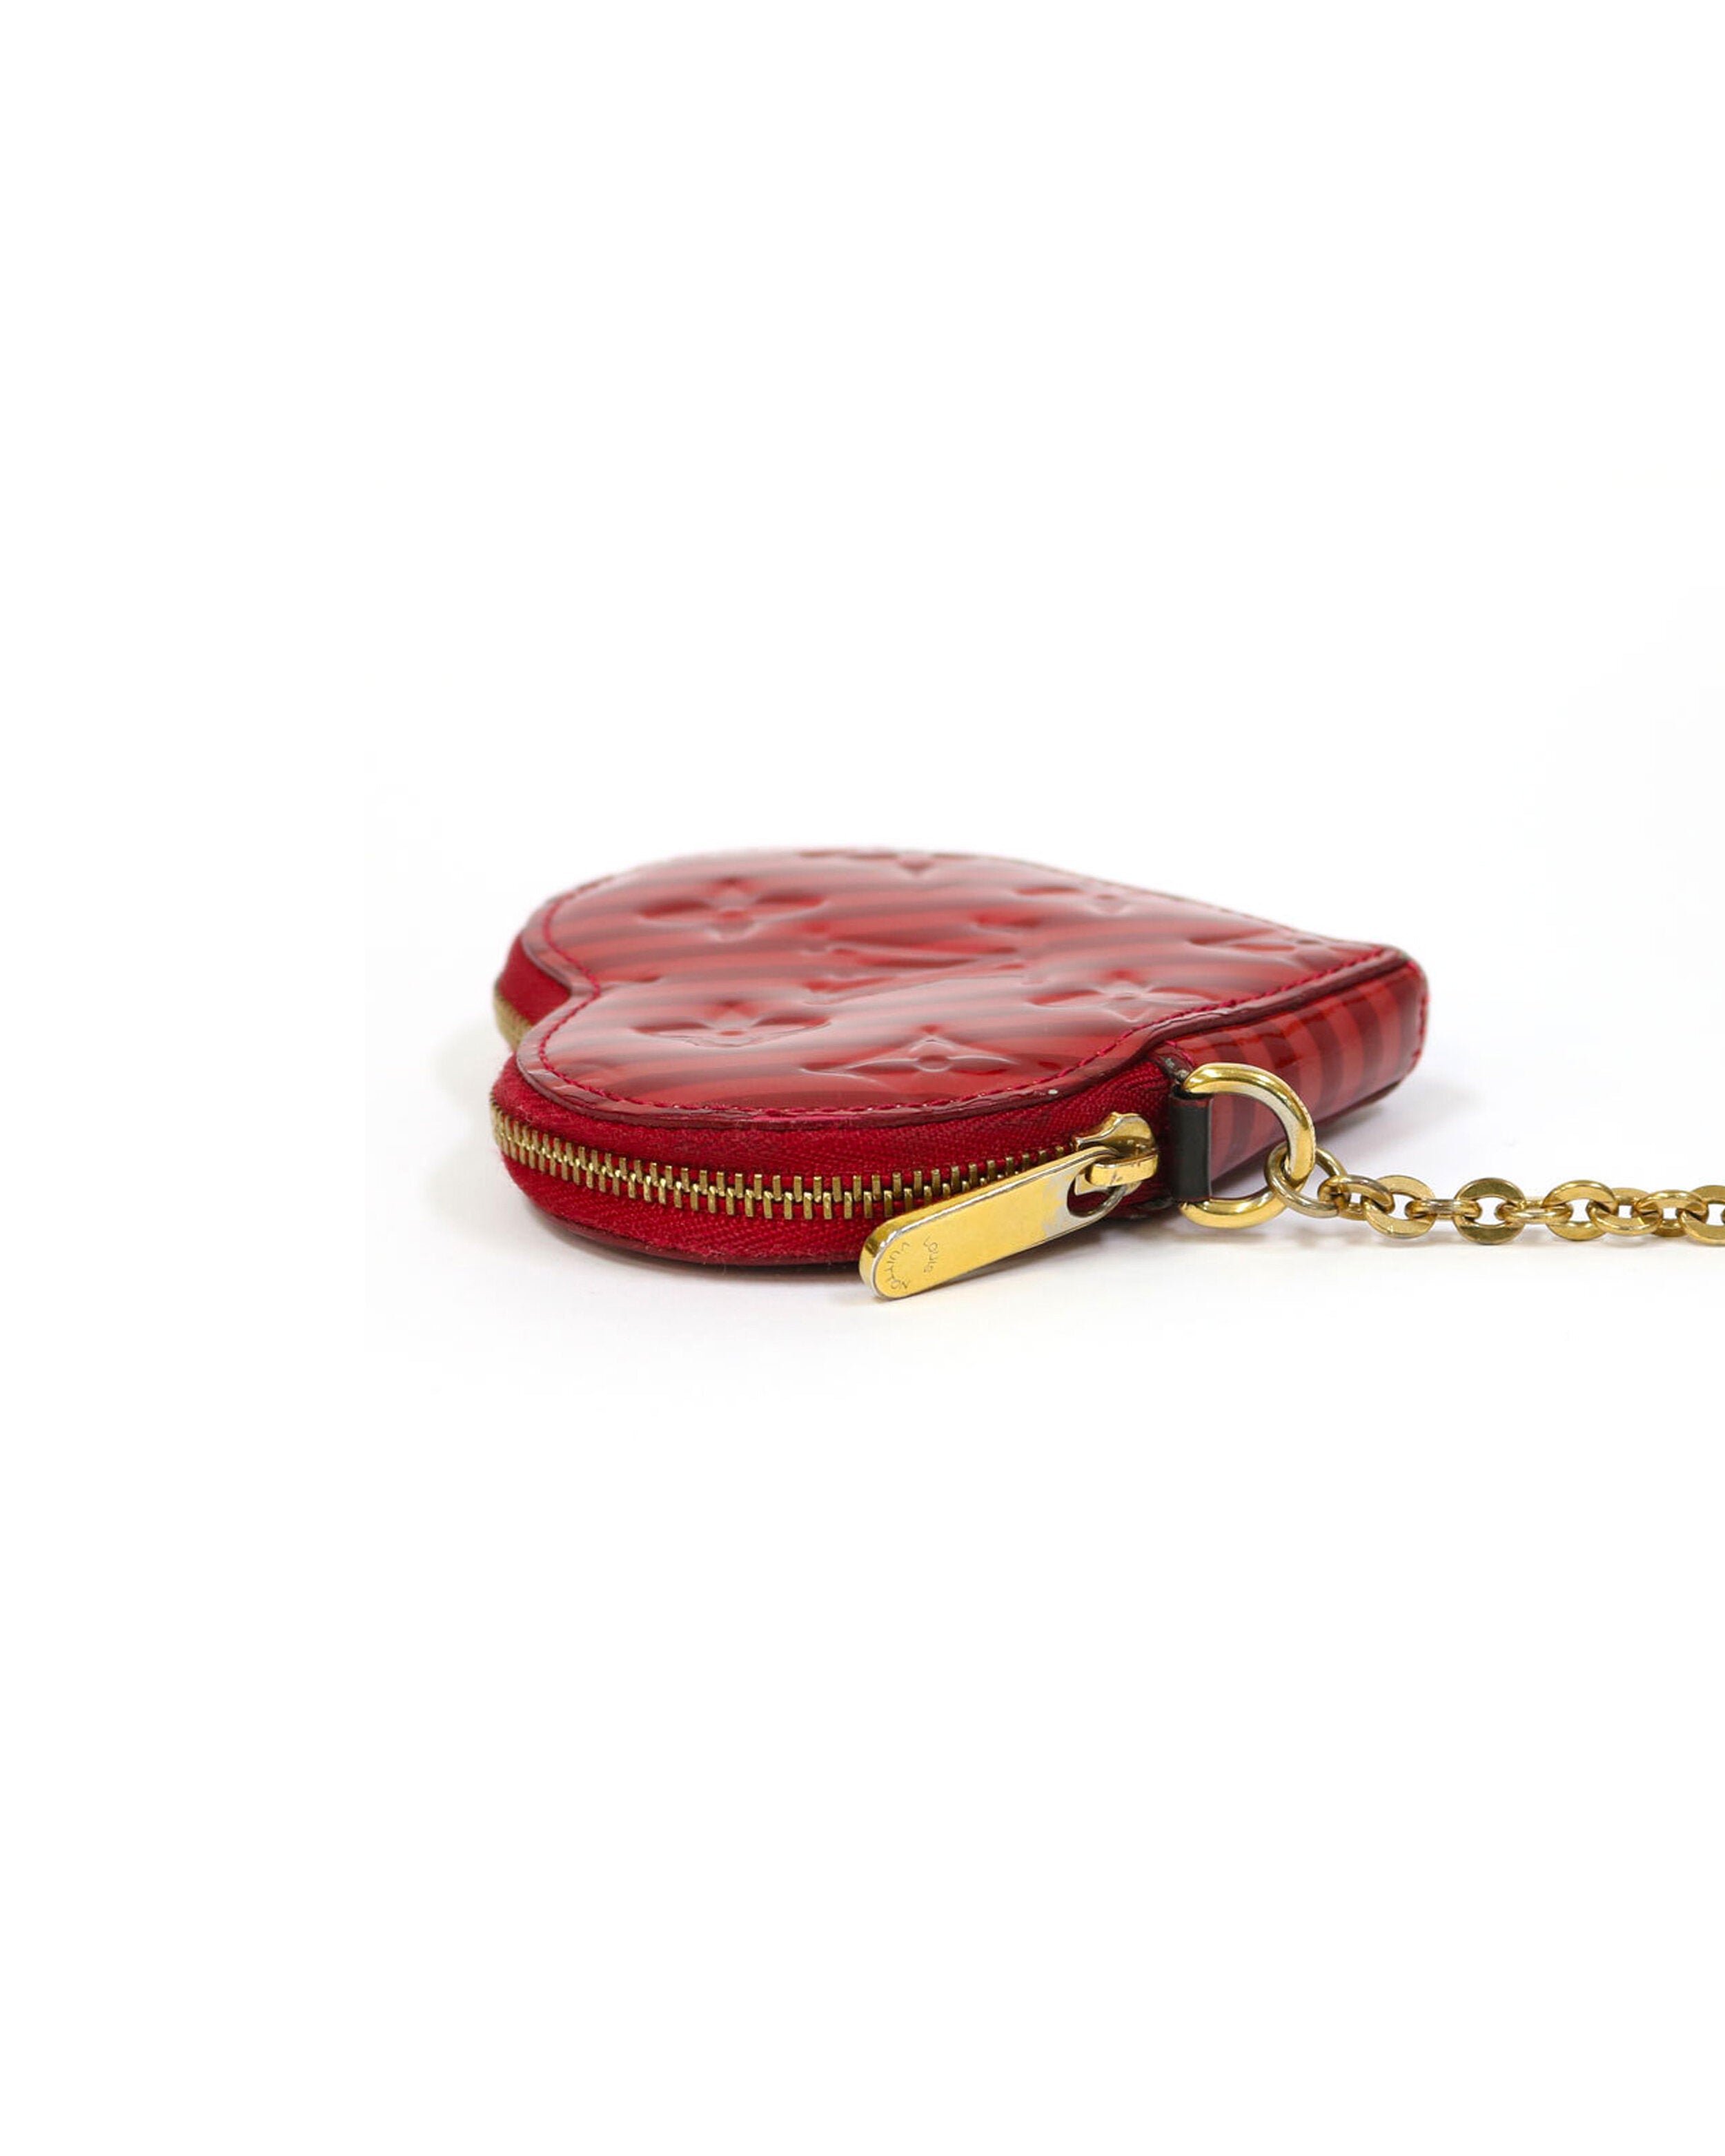 Louis Vuitton, Bags, Louis Vuitton Heart Coin Purse